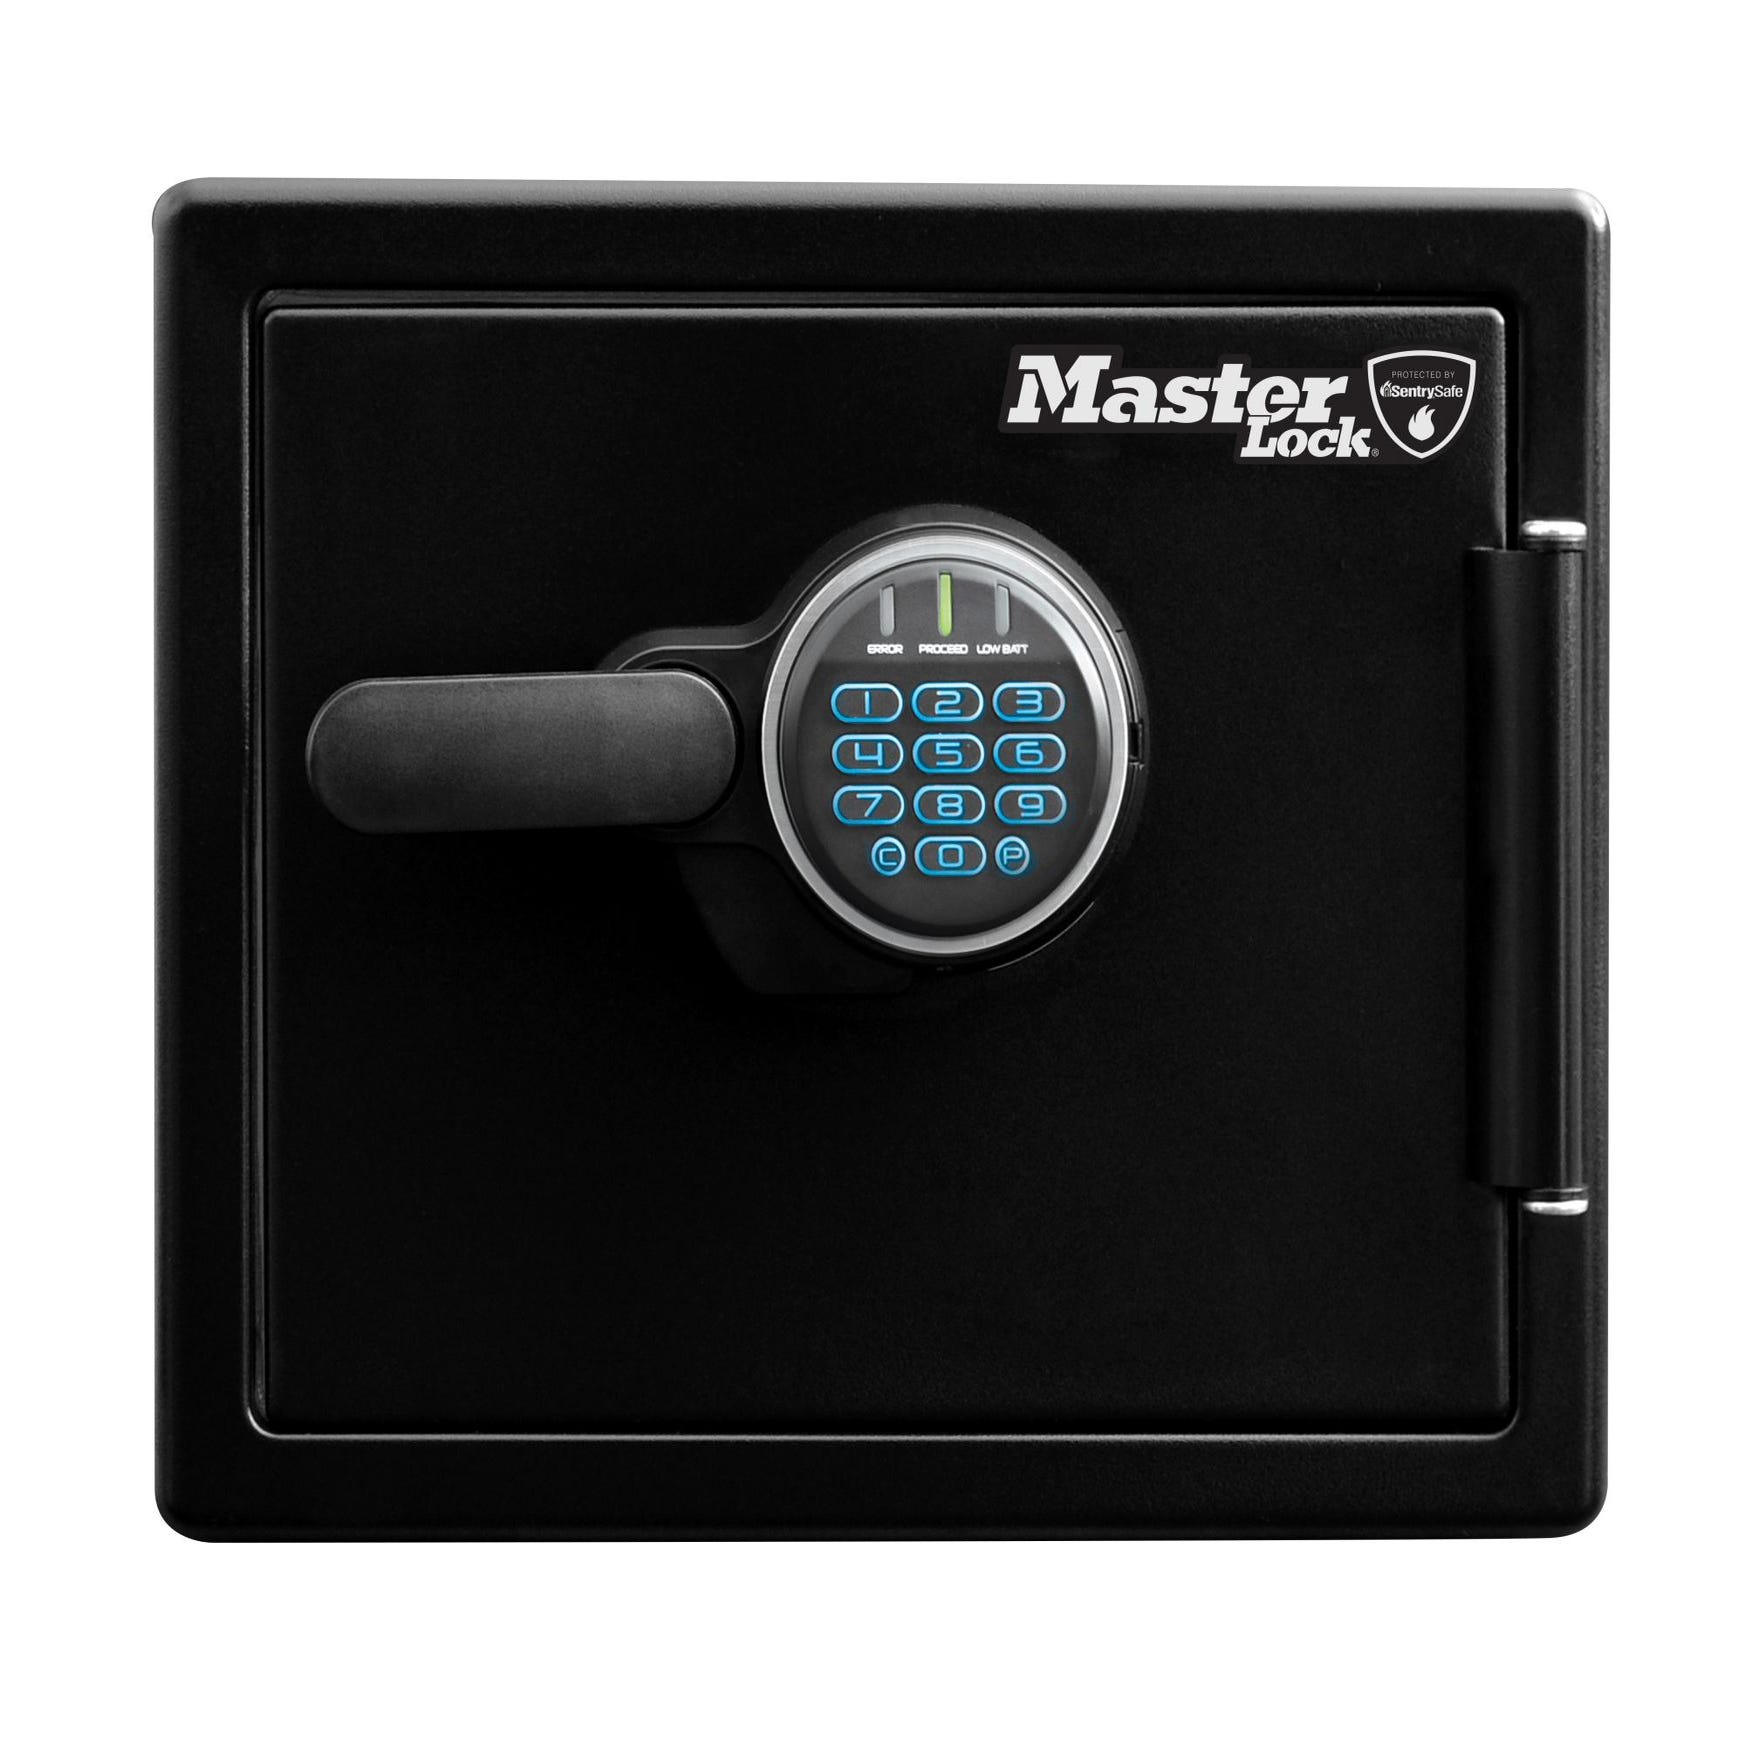 Master lock Coffre-fort Pour Clés 5403EURD Clair